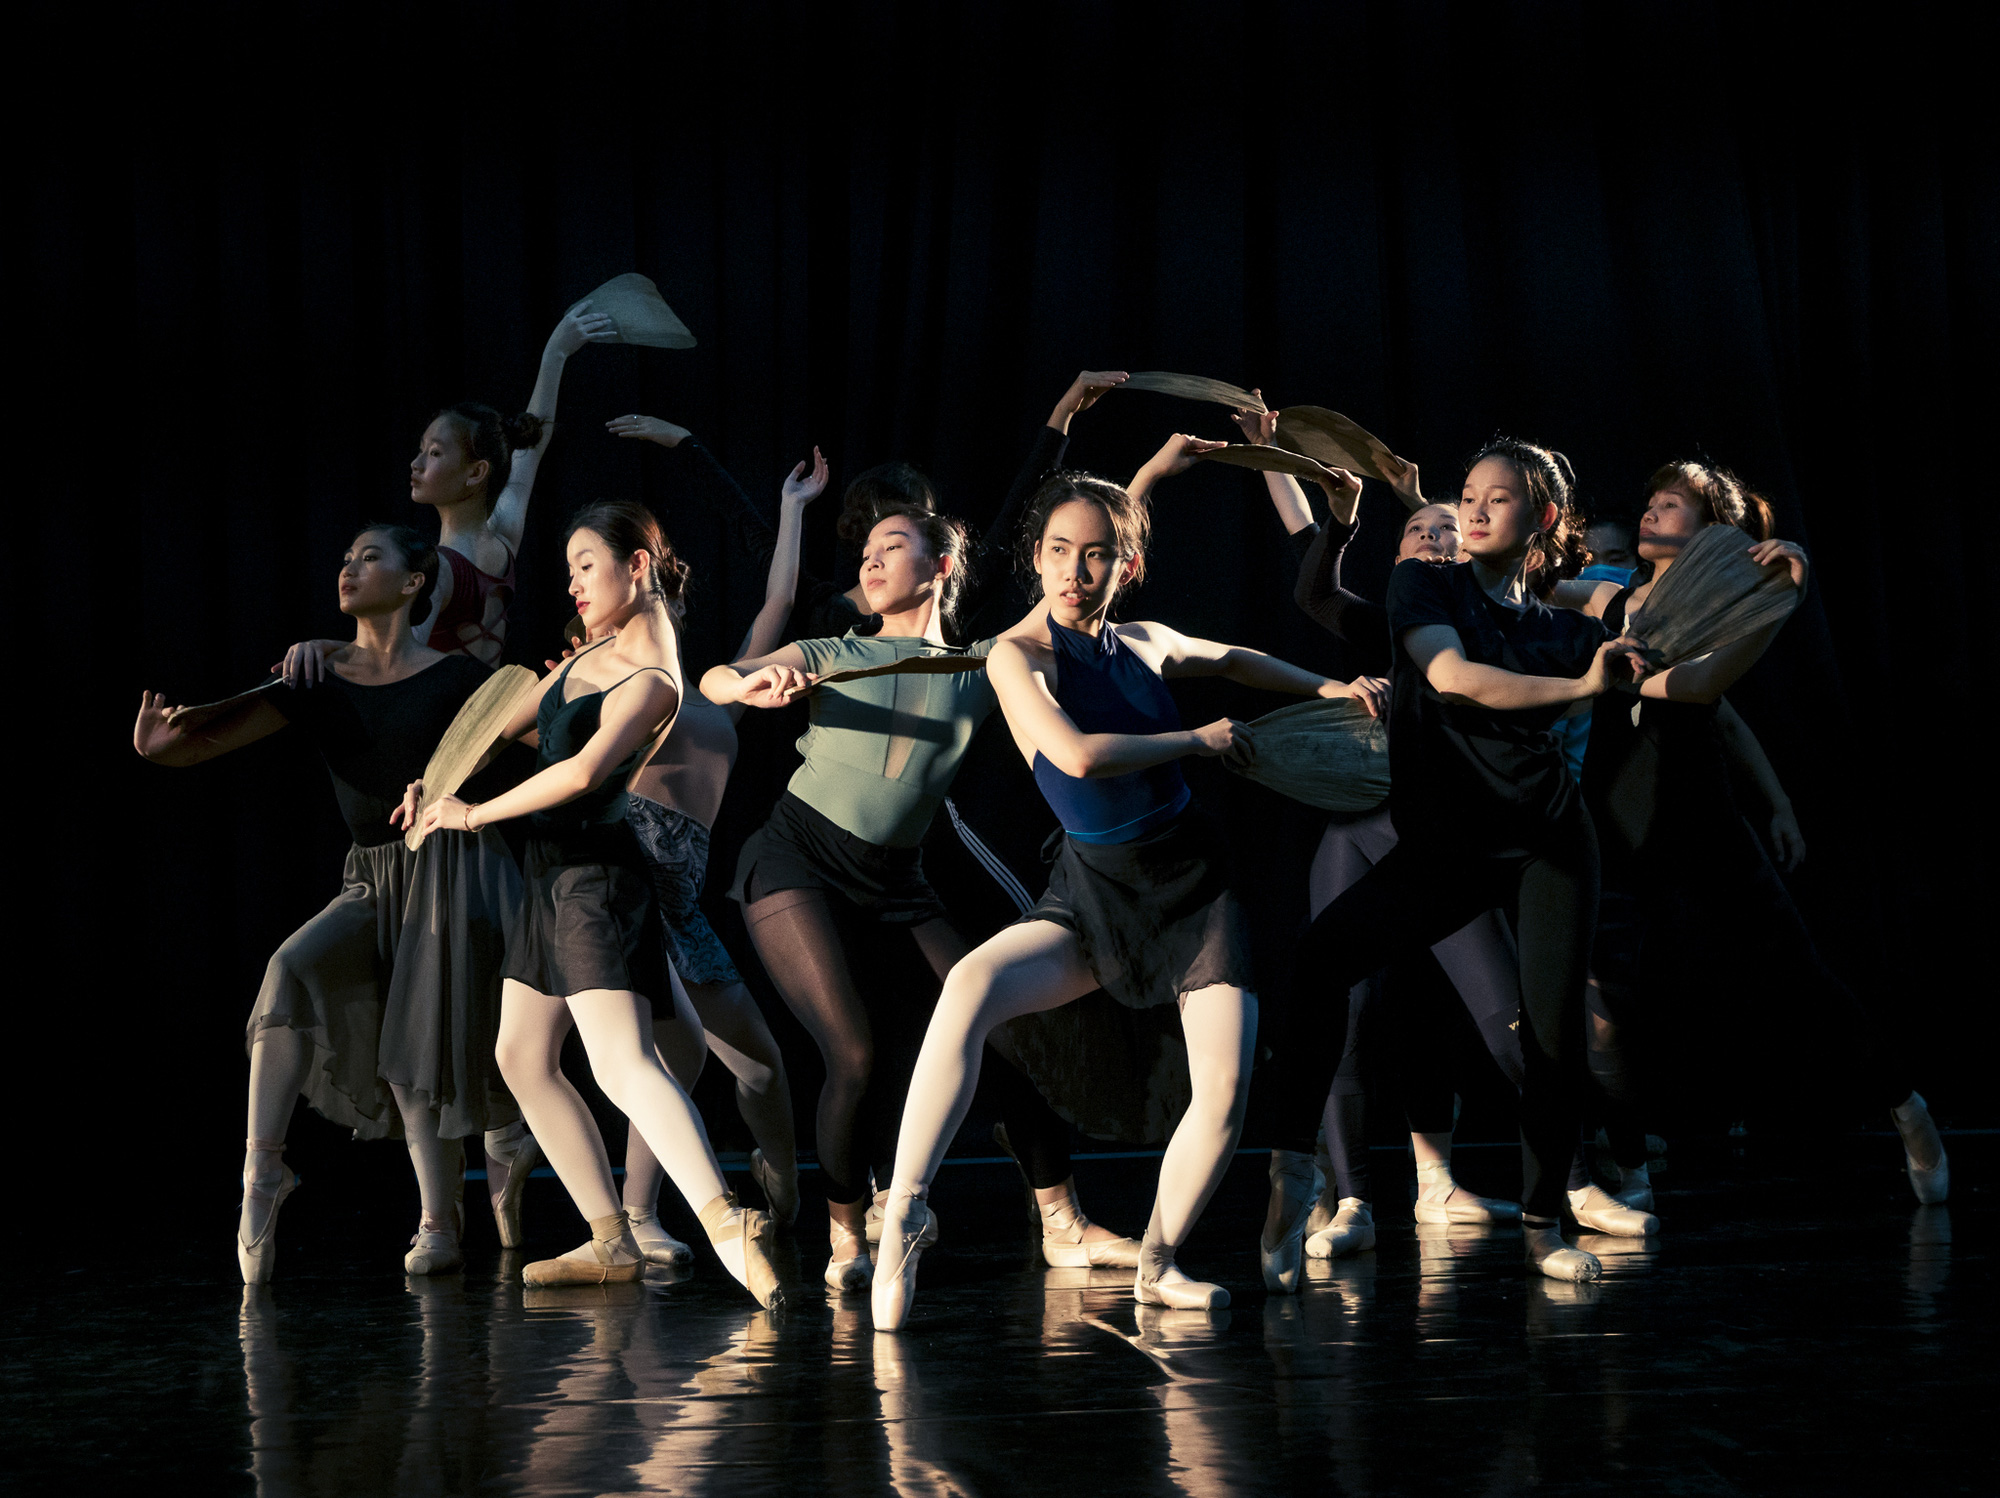 Vở ballet Kiều khai thác chiều sâu tâm hồn văn hóa Á Đông - Ảnh 1.